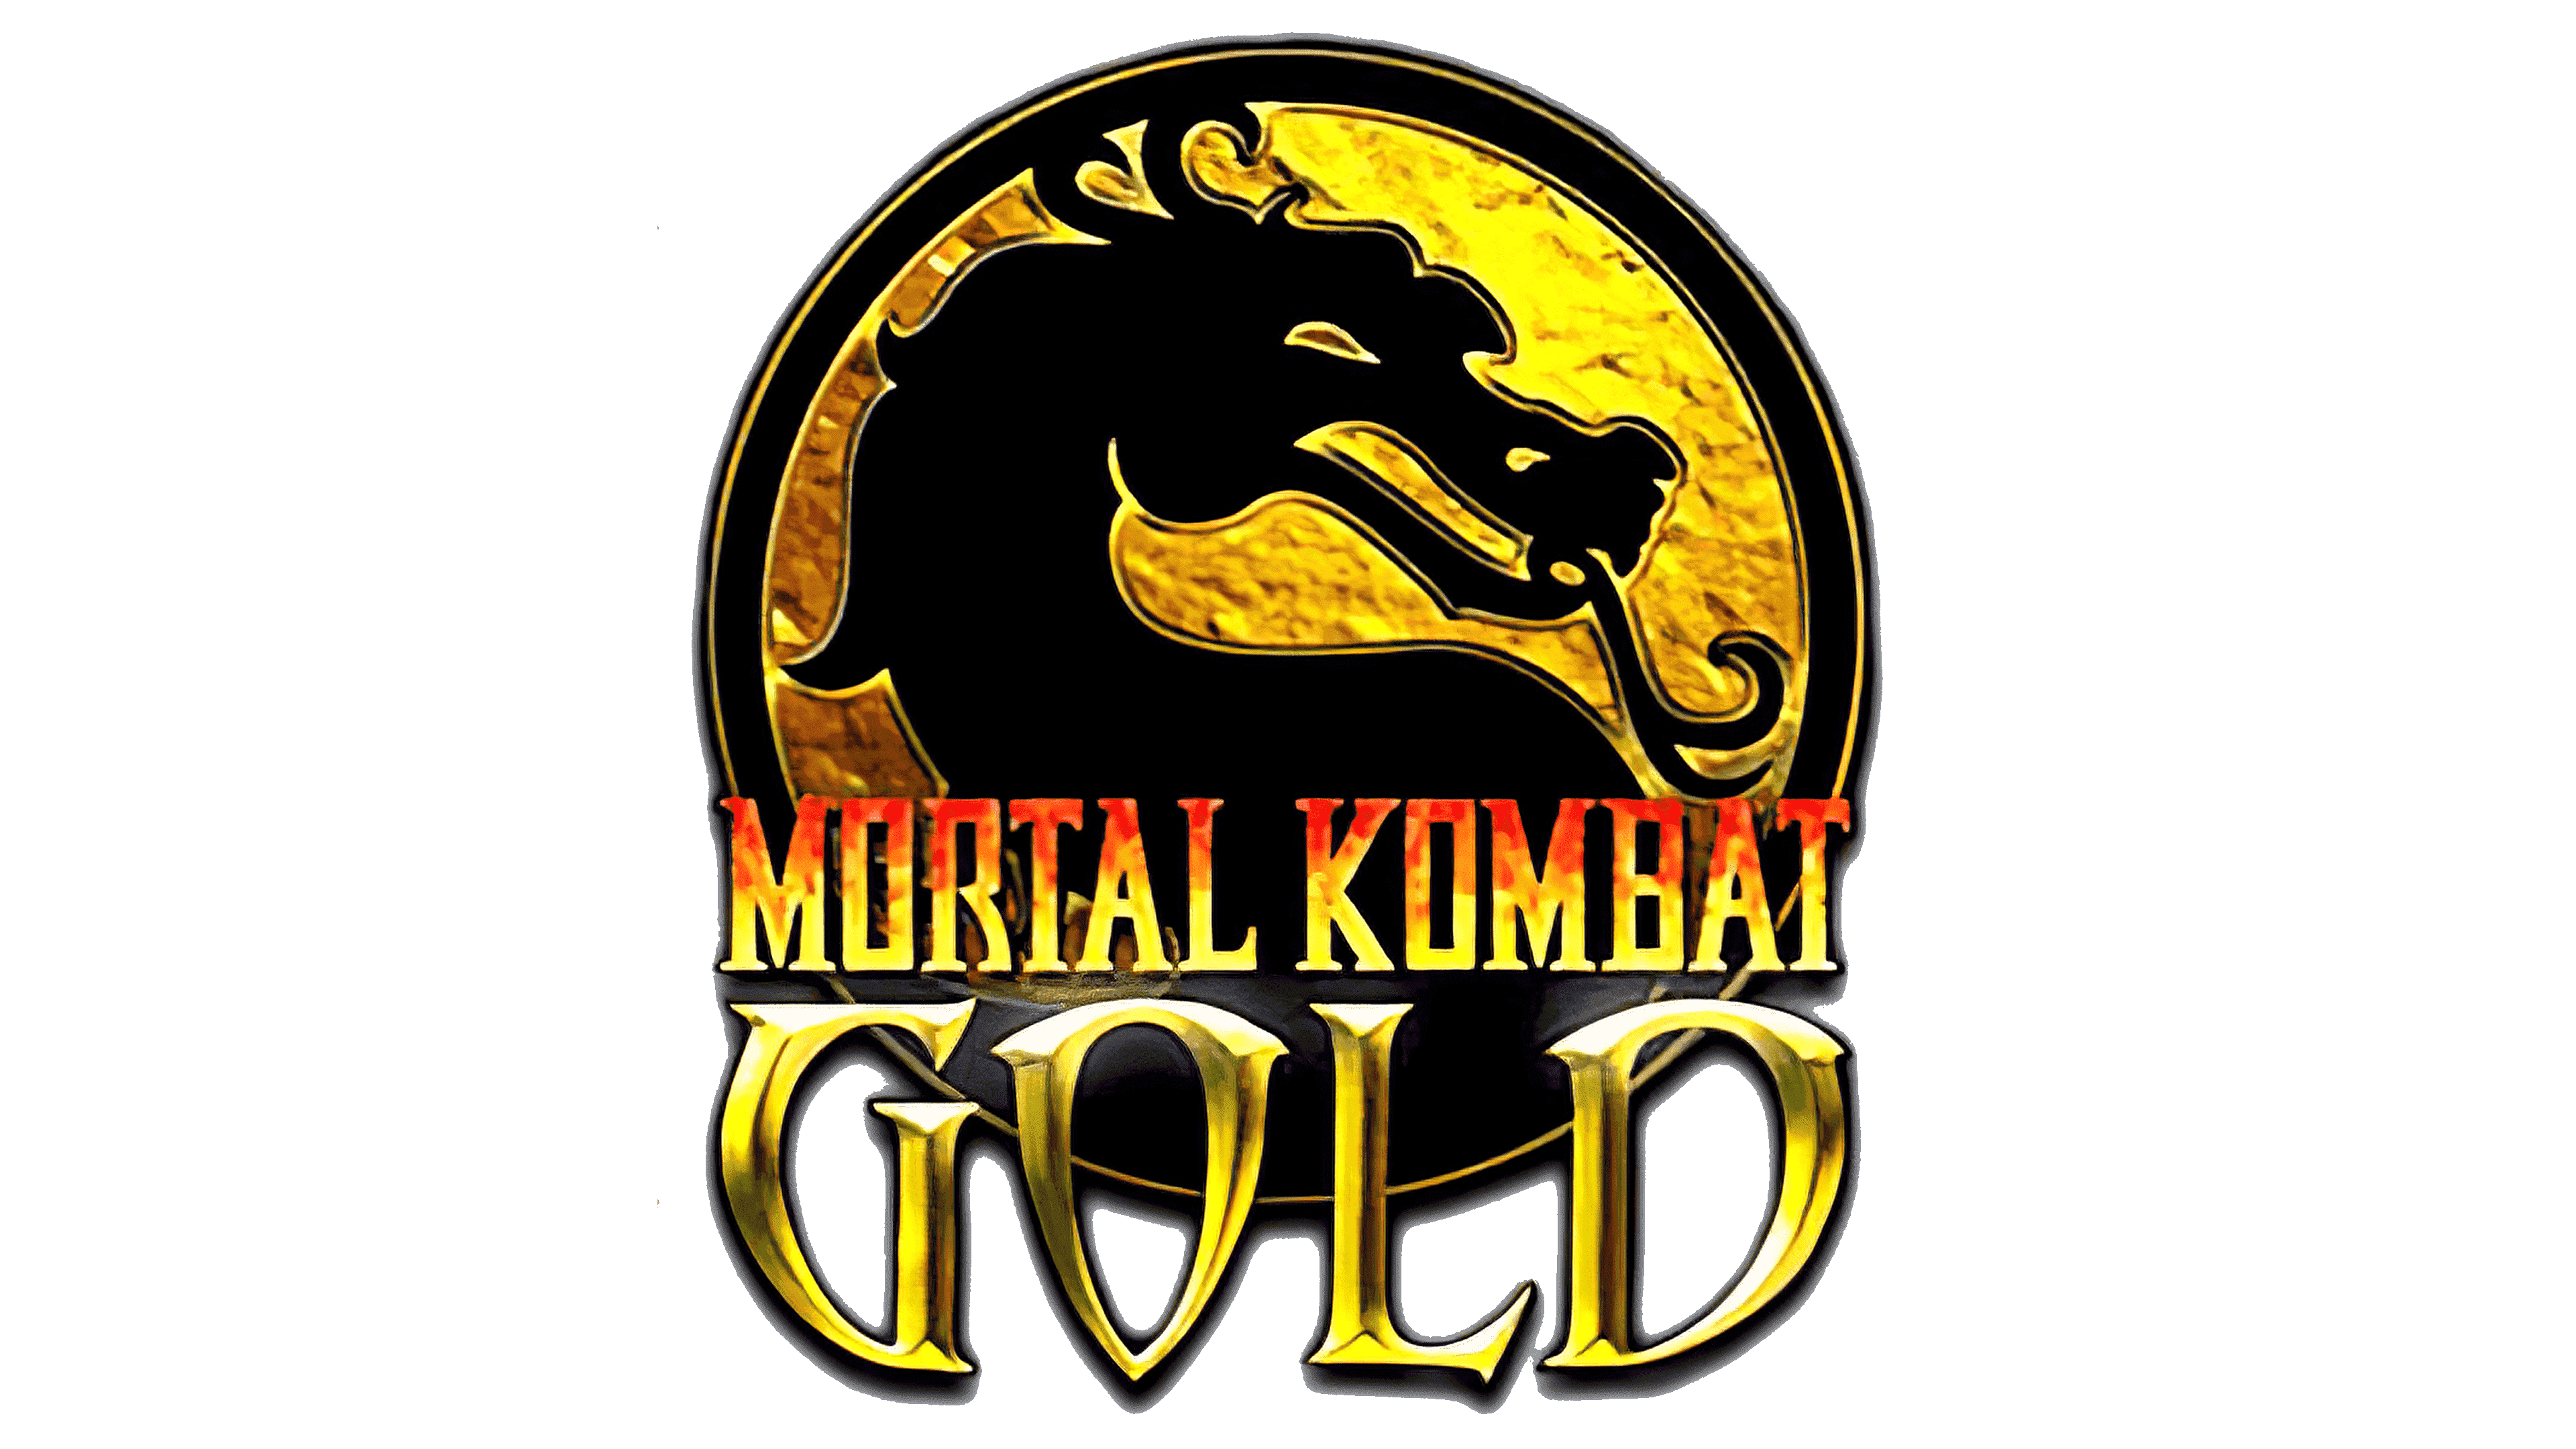 Мортал комбат 4 Голд. MK Gold Dreamcast. Mortal Kombat Gold. Mortal Kombat Gold (1999). Души и монет мортал комбат